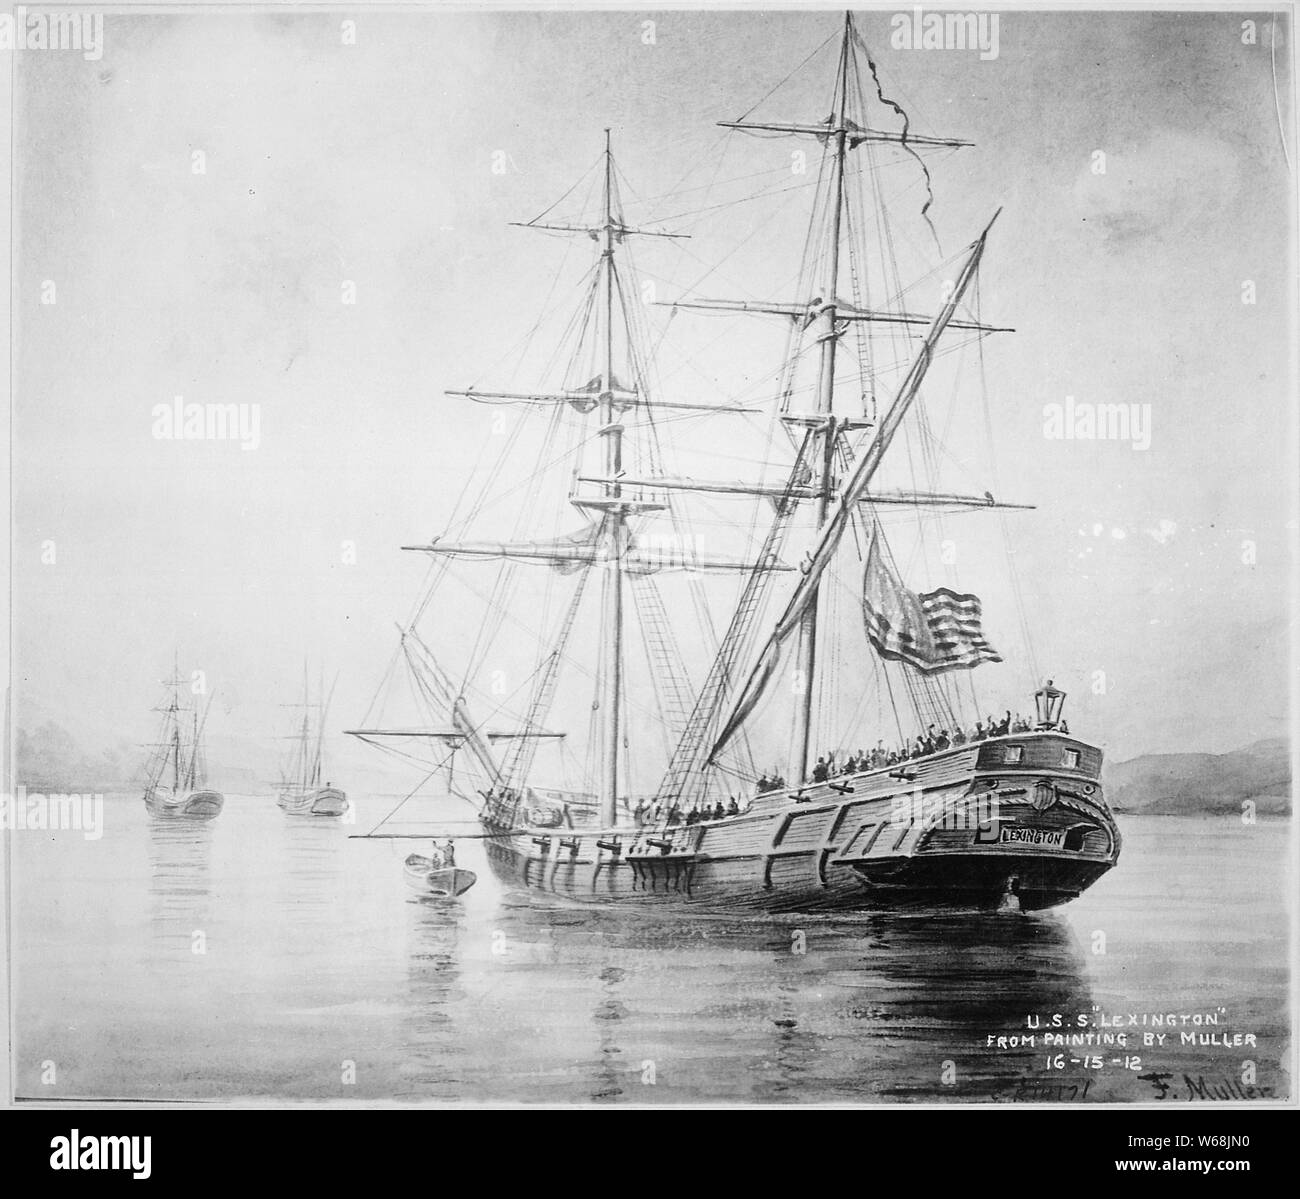 La USS Lexington; rappresentazione della USS Lexington durante la guerra rivoluzionaria americana. Foto Stock